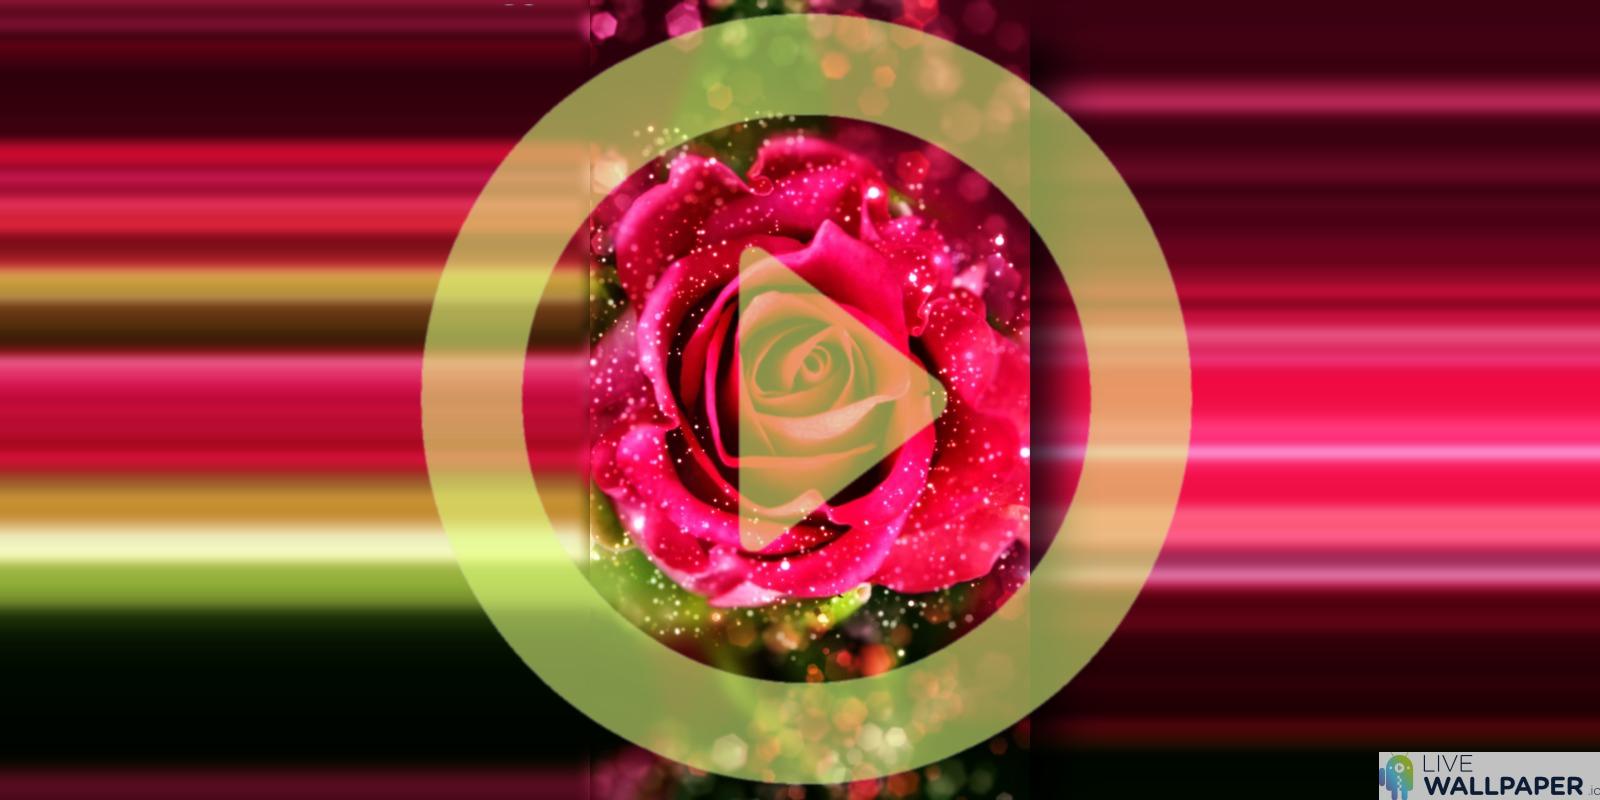 fond d'écran en direct scintillant,rose,rose,rouge,pétale,fleur